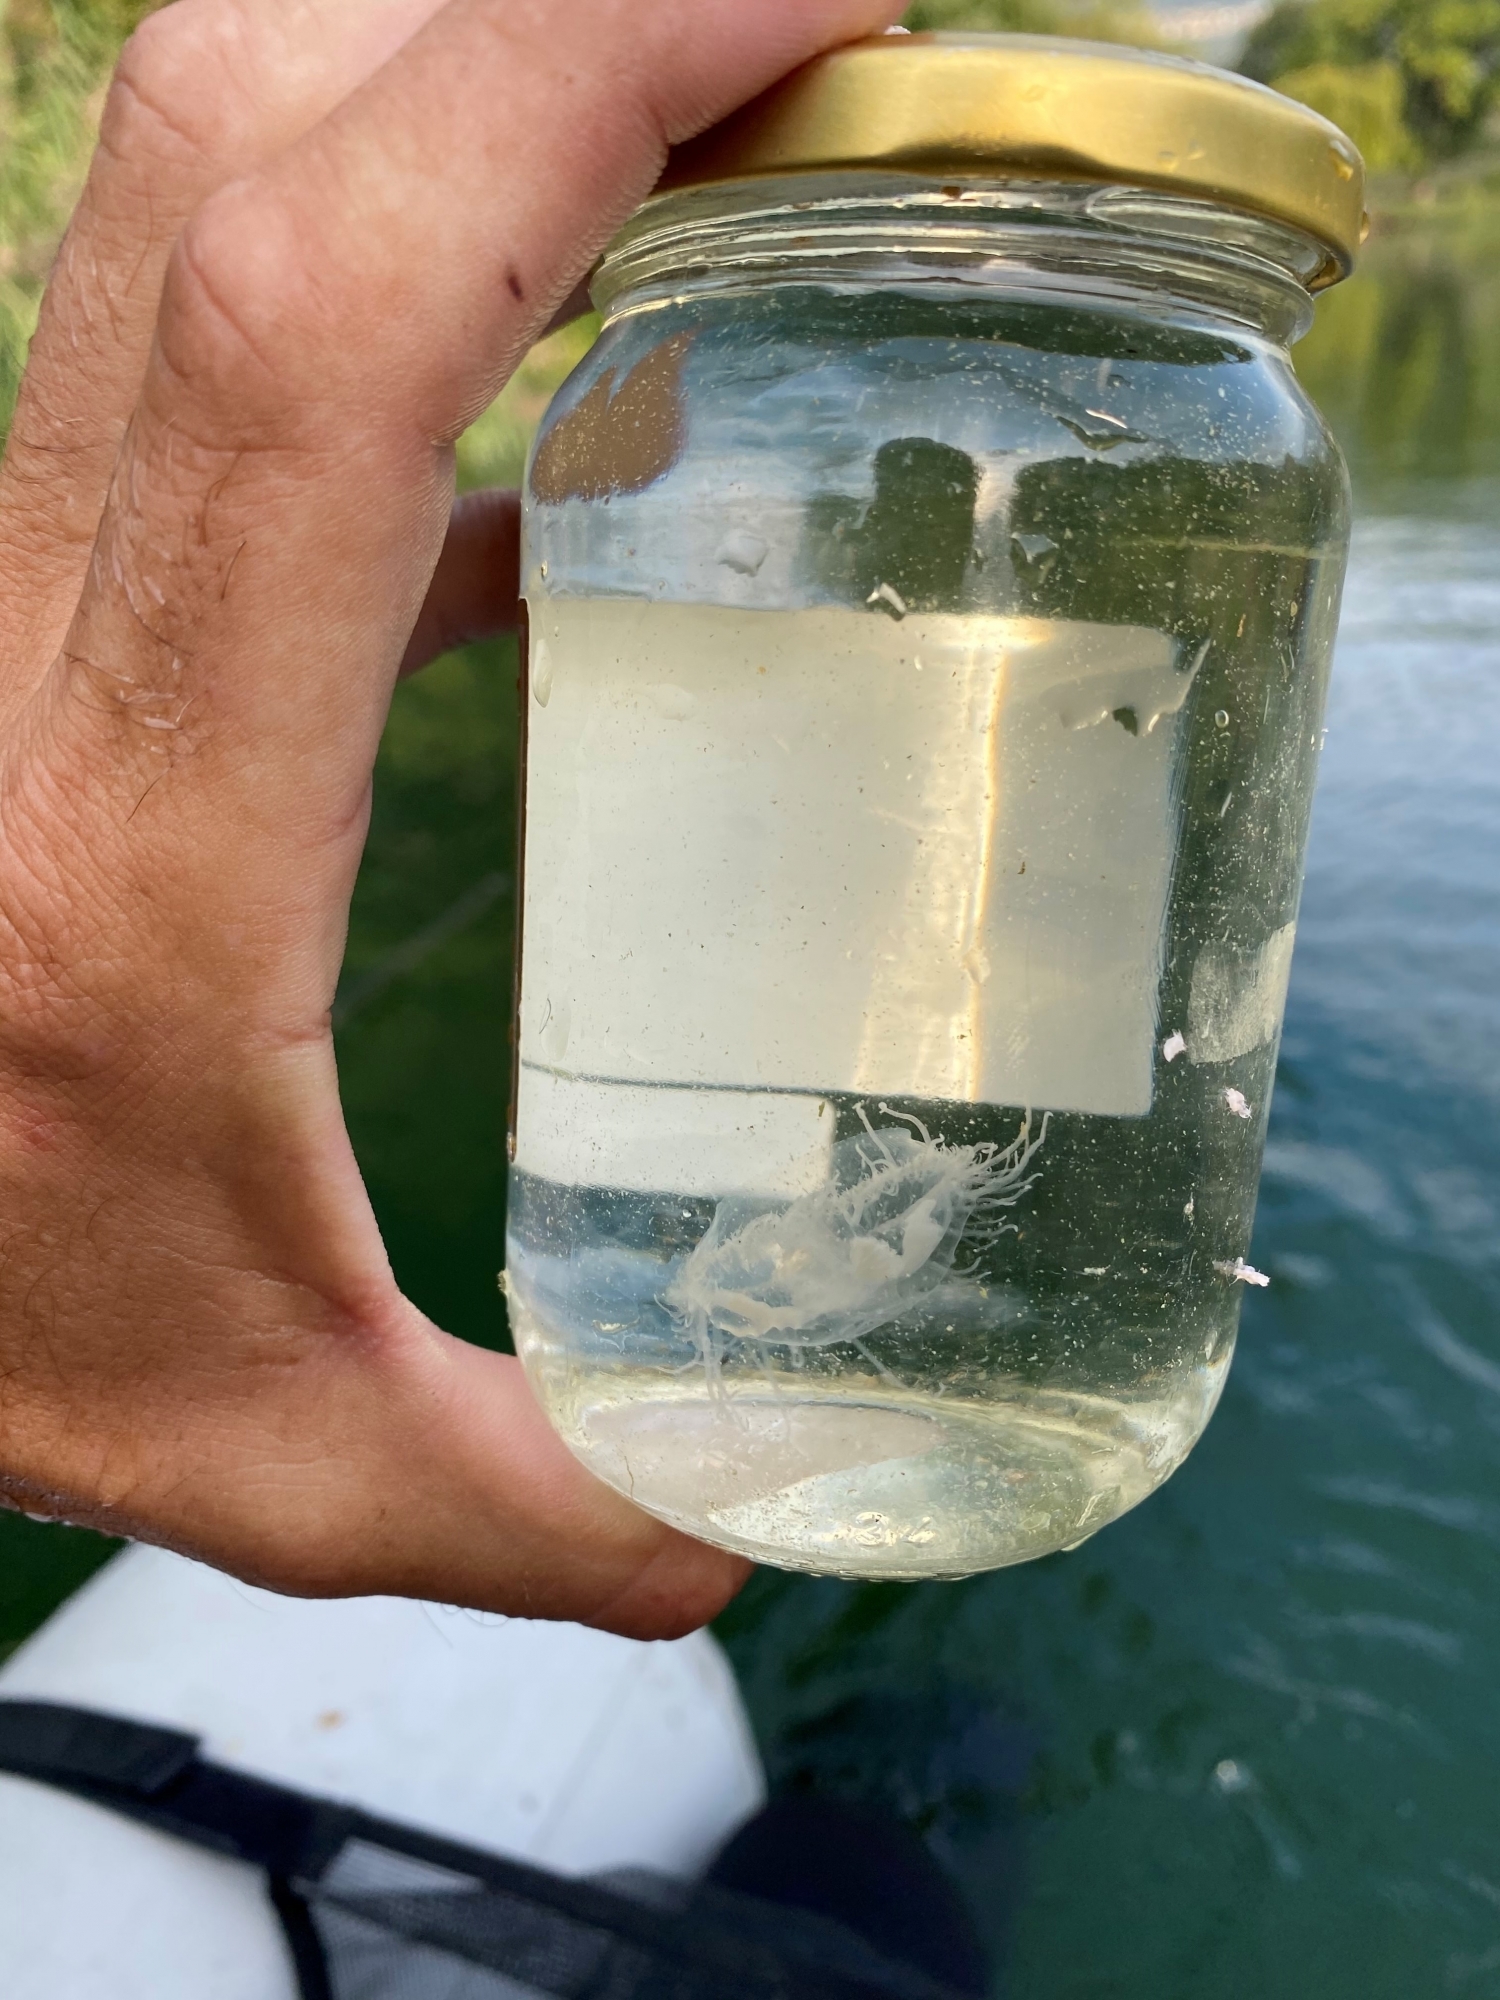 Les méduses retrouvées aux Iles sont inoffensives et se développent quand la température de l'eau atteint les 25 degrés.